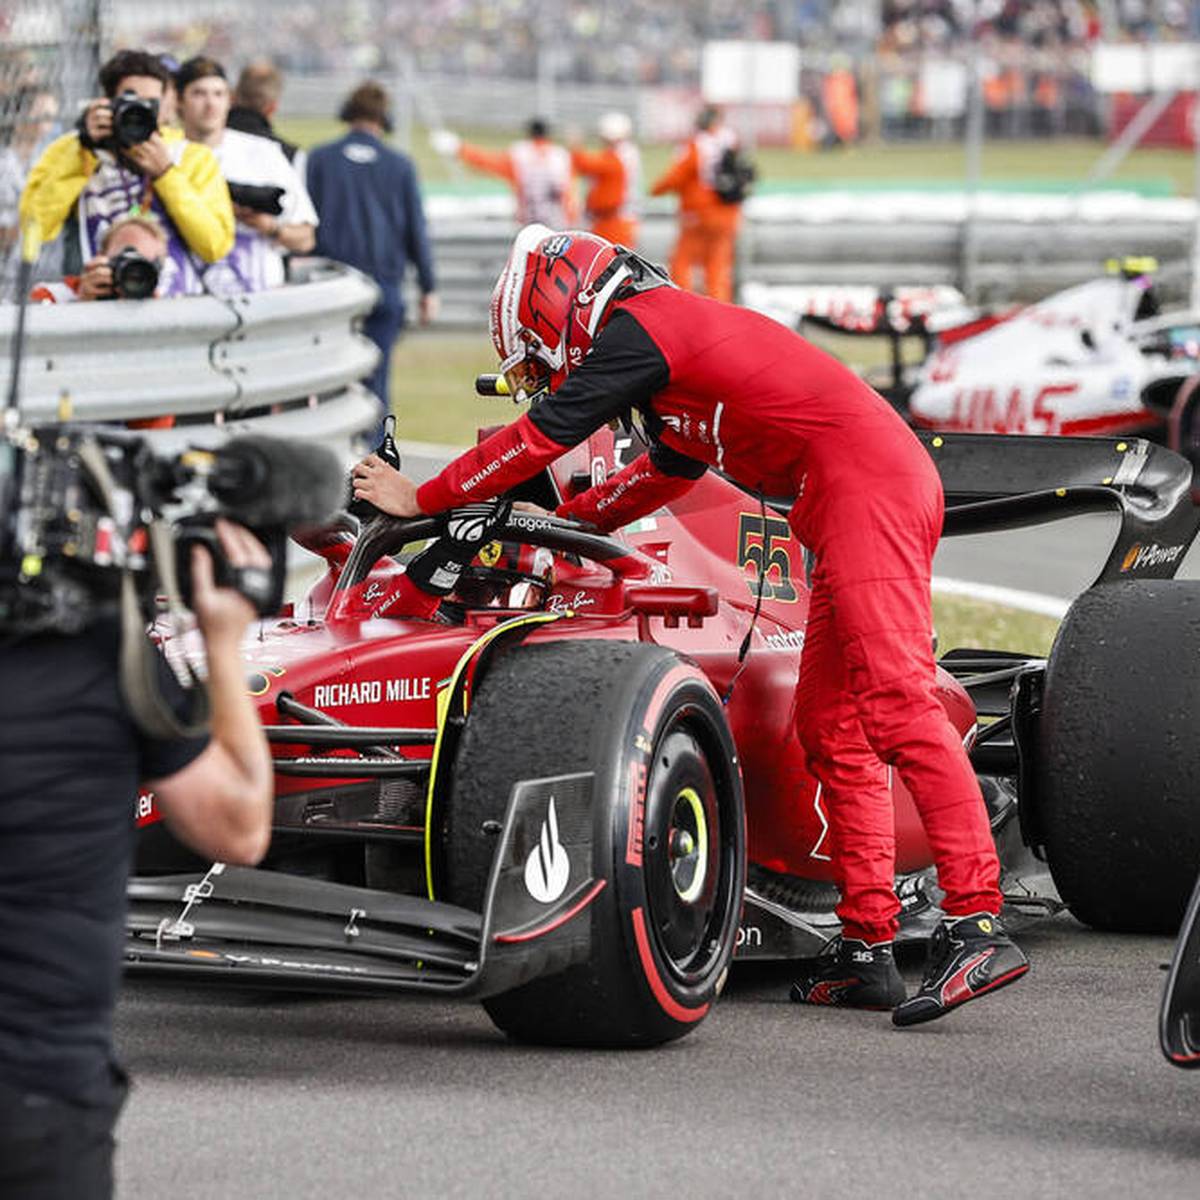 Carlos Sainz fährt in Silverstone zum Triumph, den Doppelsieg verpasst Ferrari dennoch. Die SPORT1-Experten Christian Danner und Ralf Bach kritisieren das italienische Team deutlich.